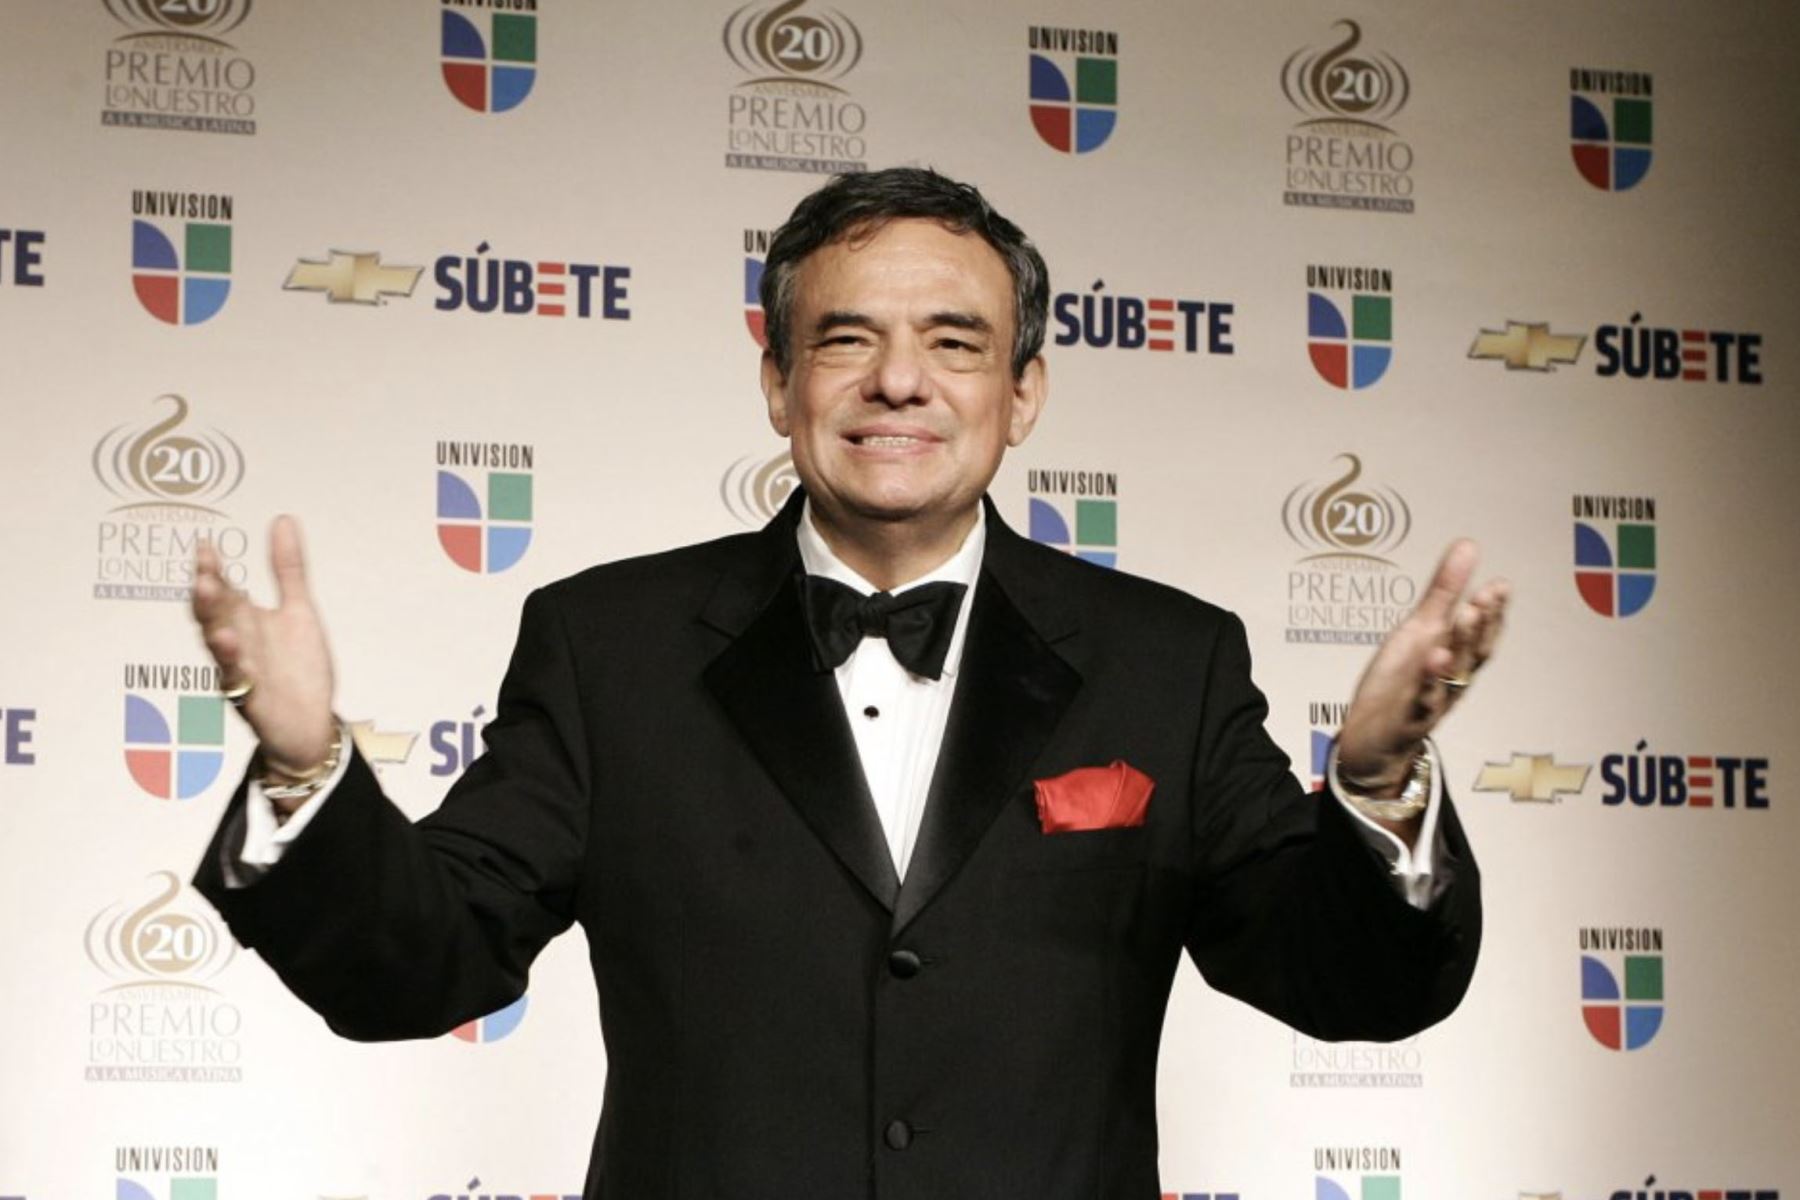 El cantante mexicano José José posa durante la vigésima entrega de los Premios Lo Nuestro, el 21 de febrero de 2008 en el American Airlines Arena, en Miami, Florida (EE UU).
Foto: EFE